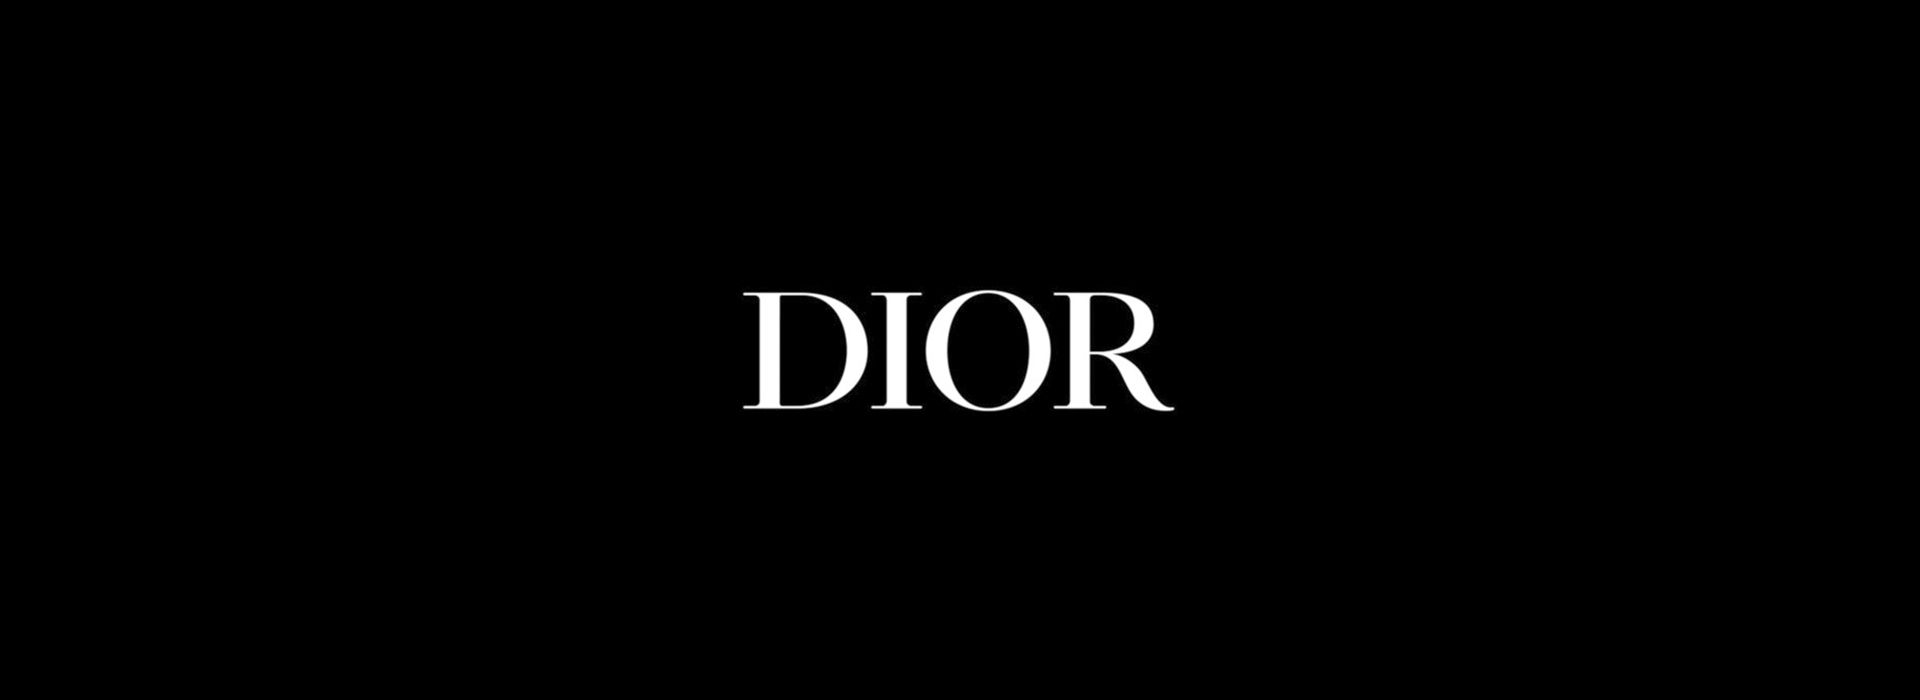 Weisses Logo von Dior auf schwarzem Hintergrund.